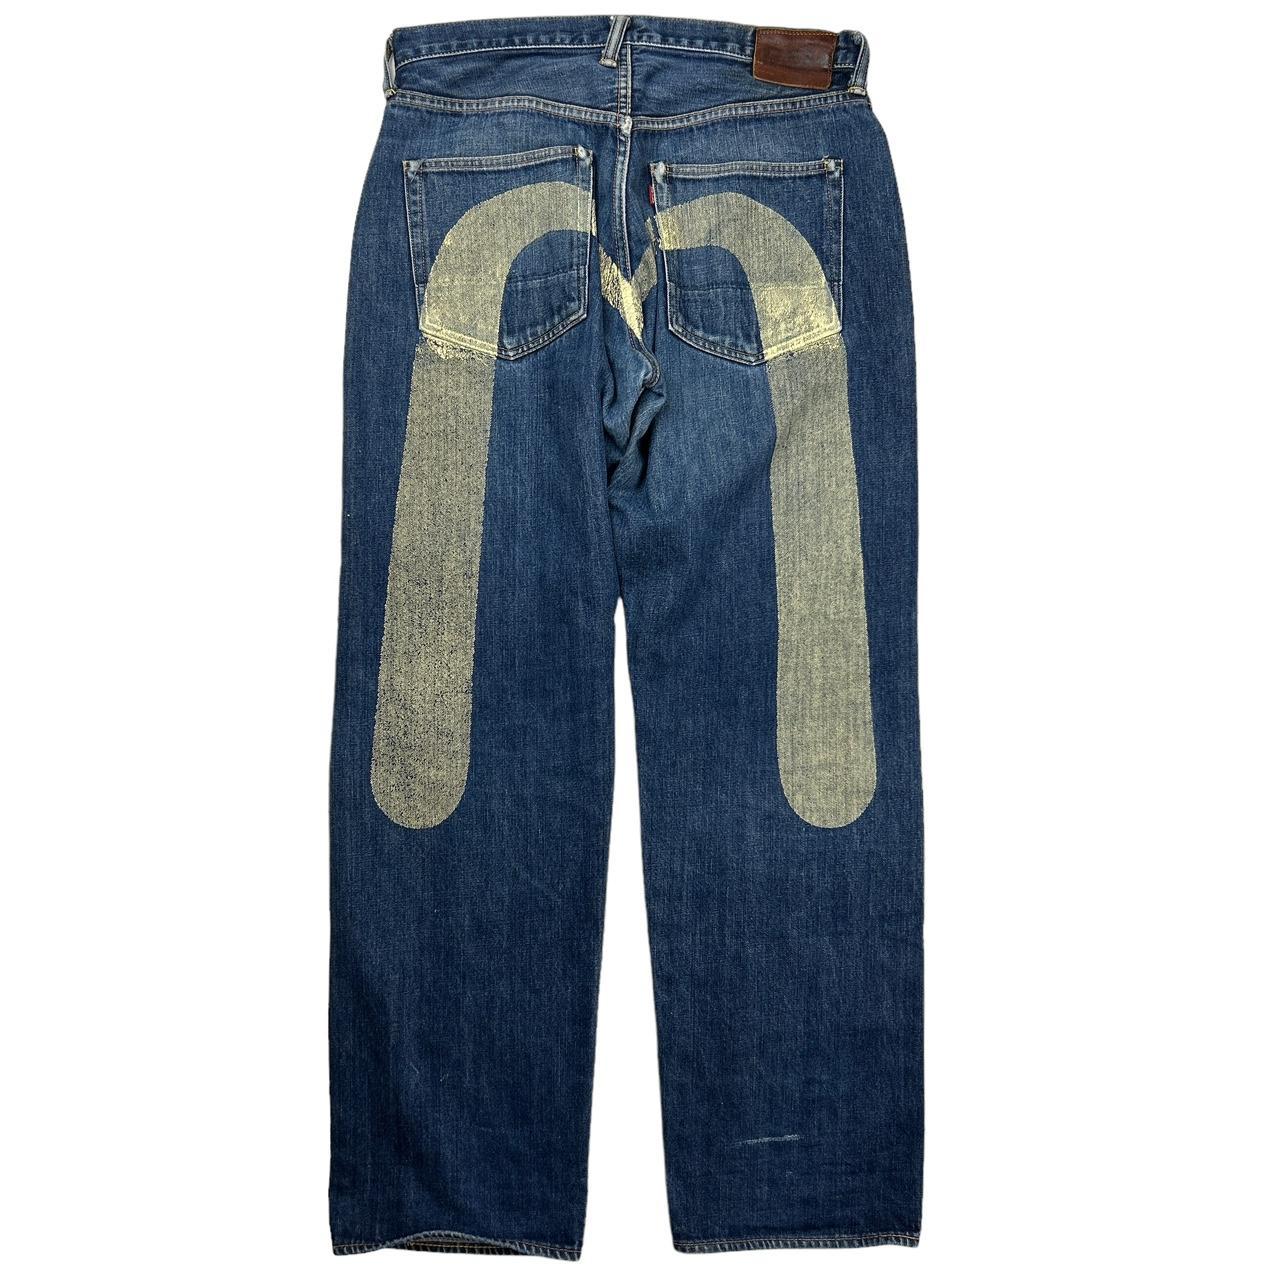 Evisu Double Daicock Jeans  (36")